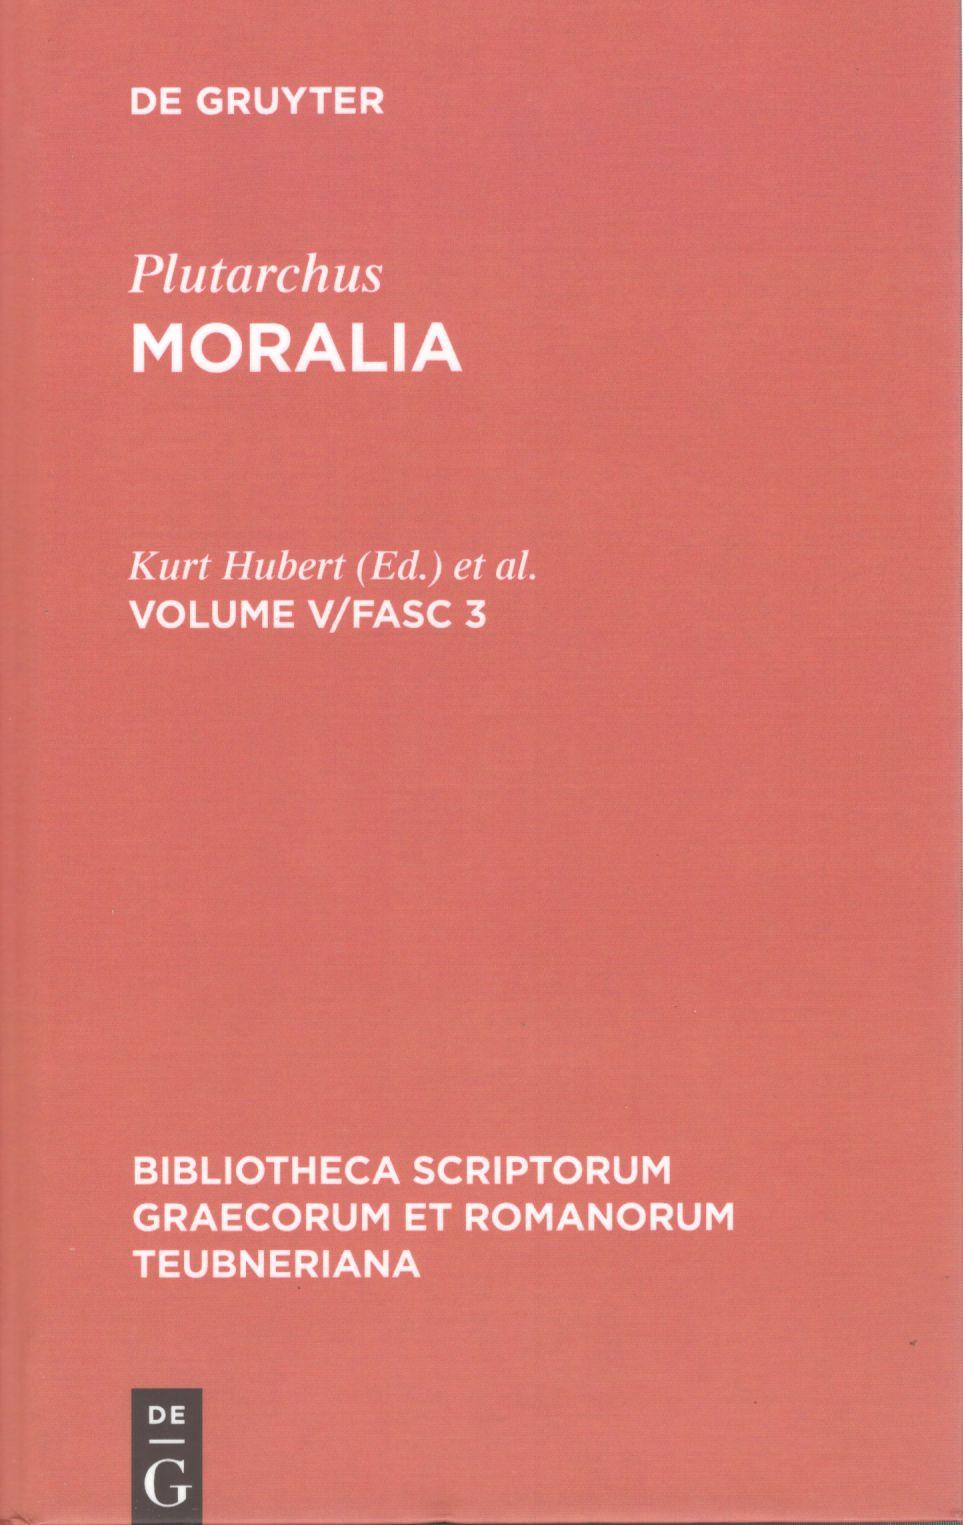 PLUΤARCHI MORALIA VOLUME V/FASC. 3